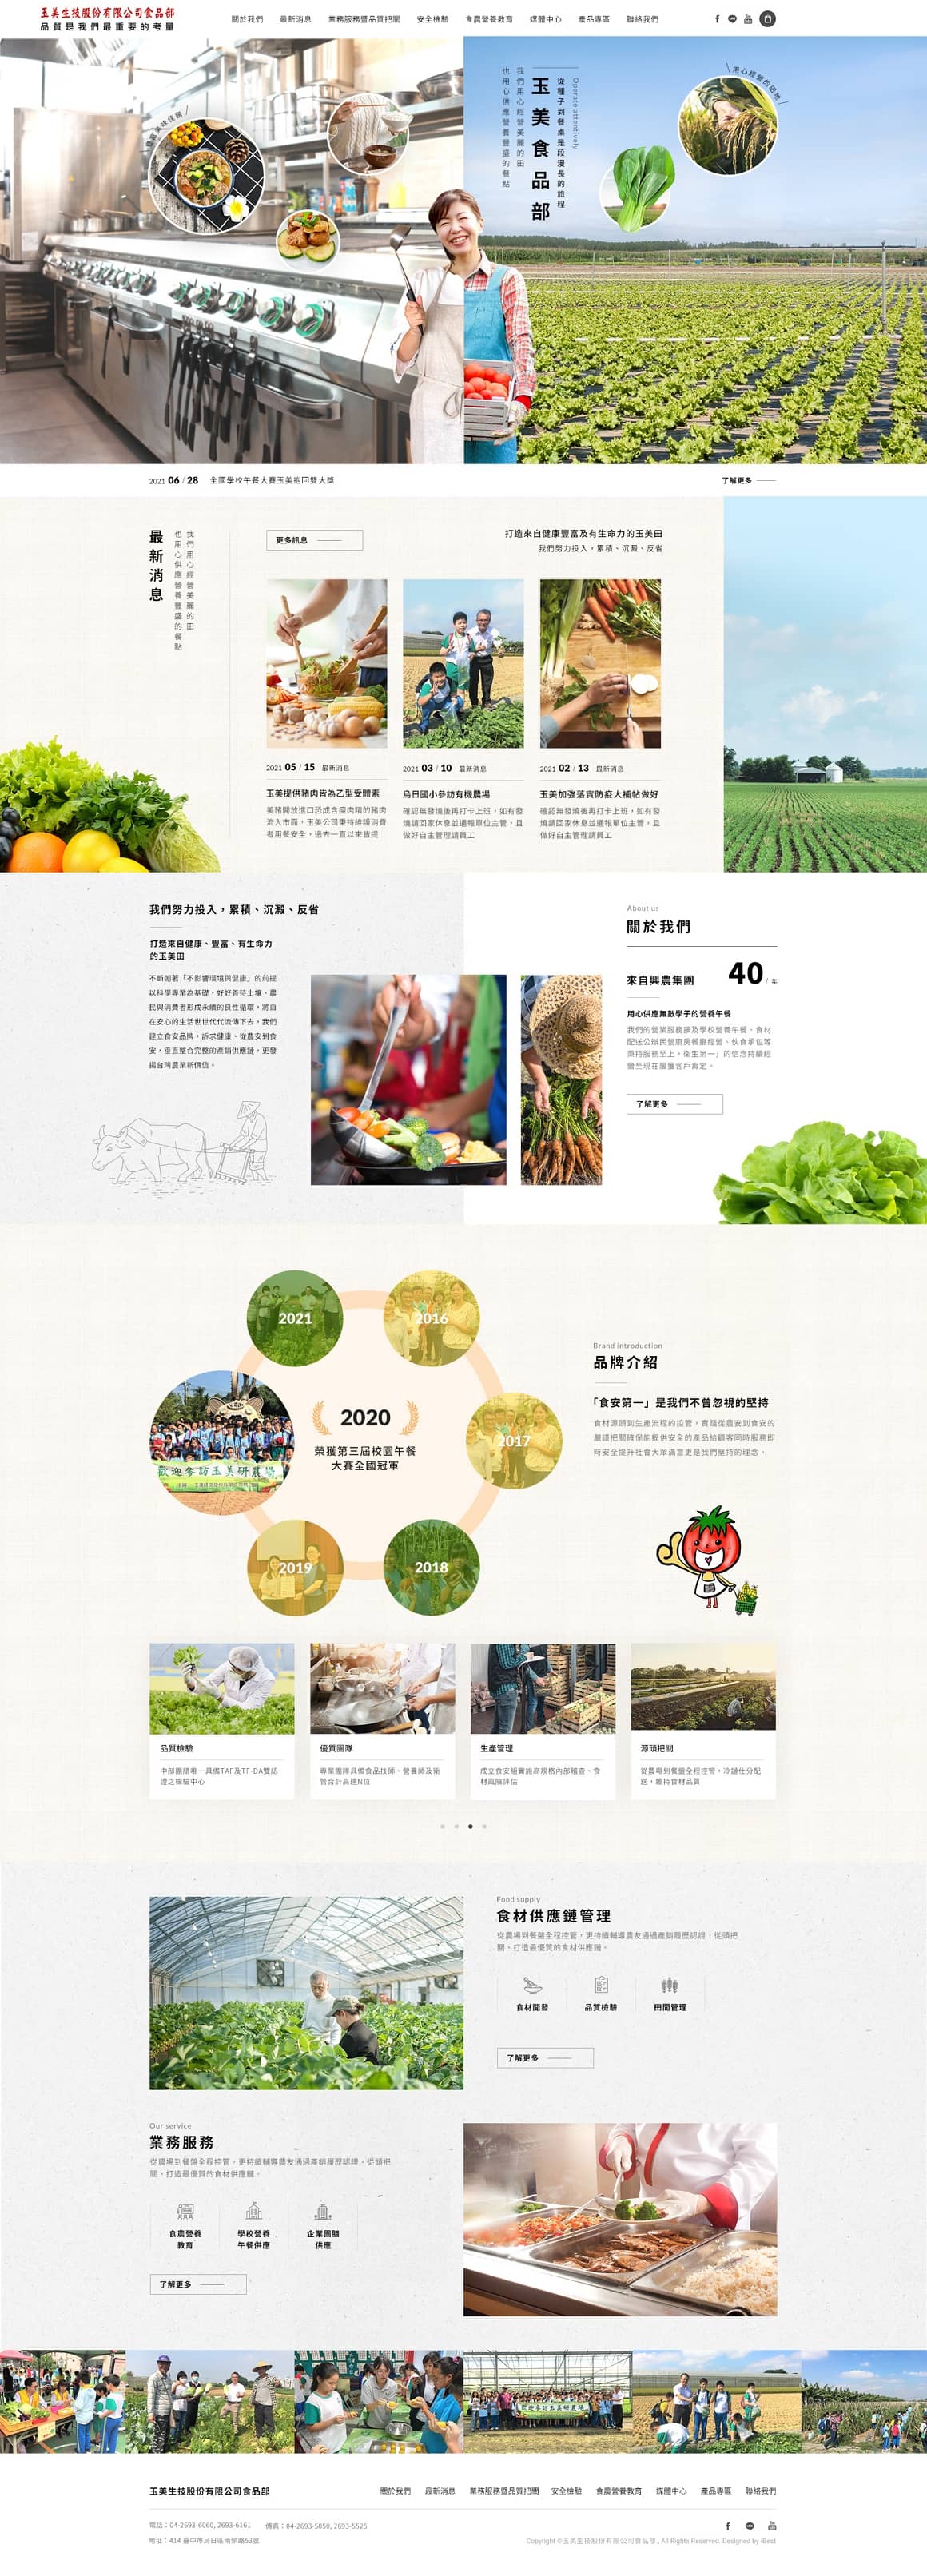 玉美生技食品部-網頁設計案例